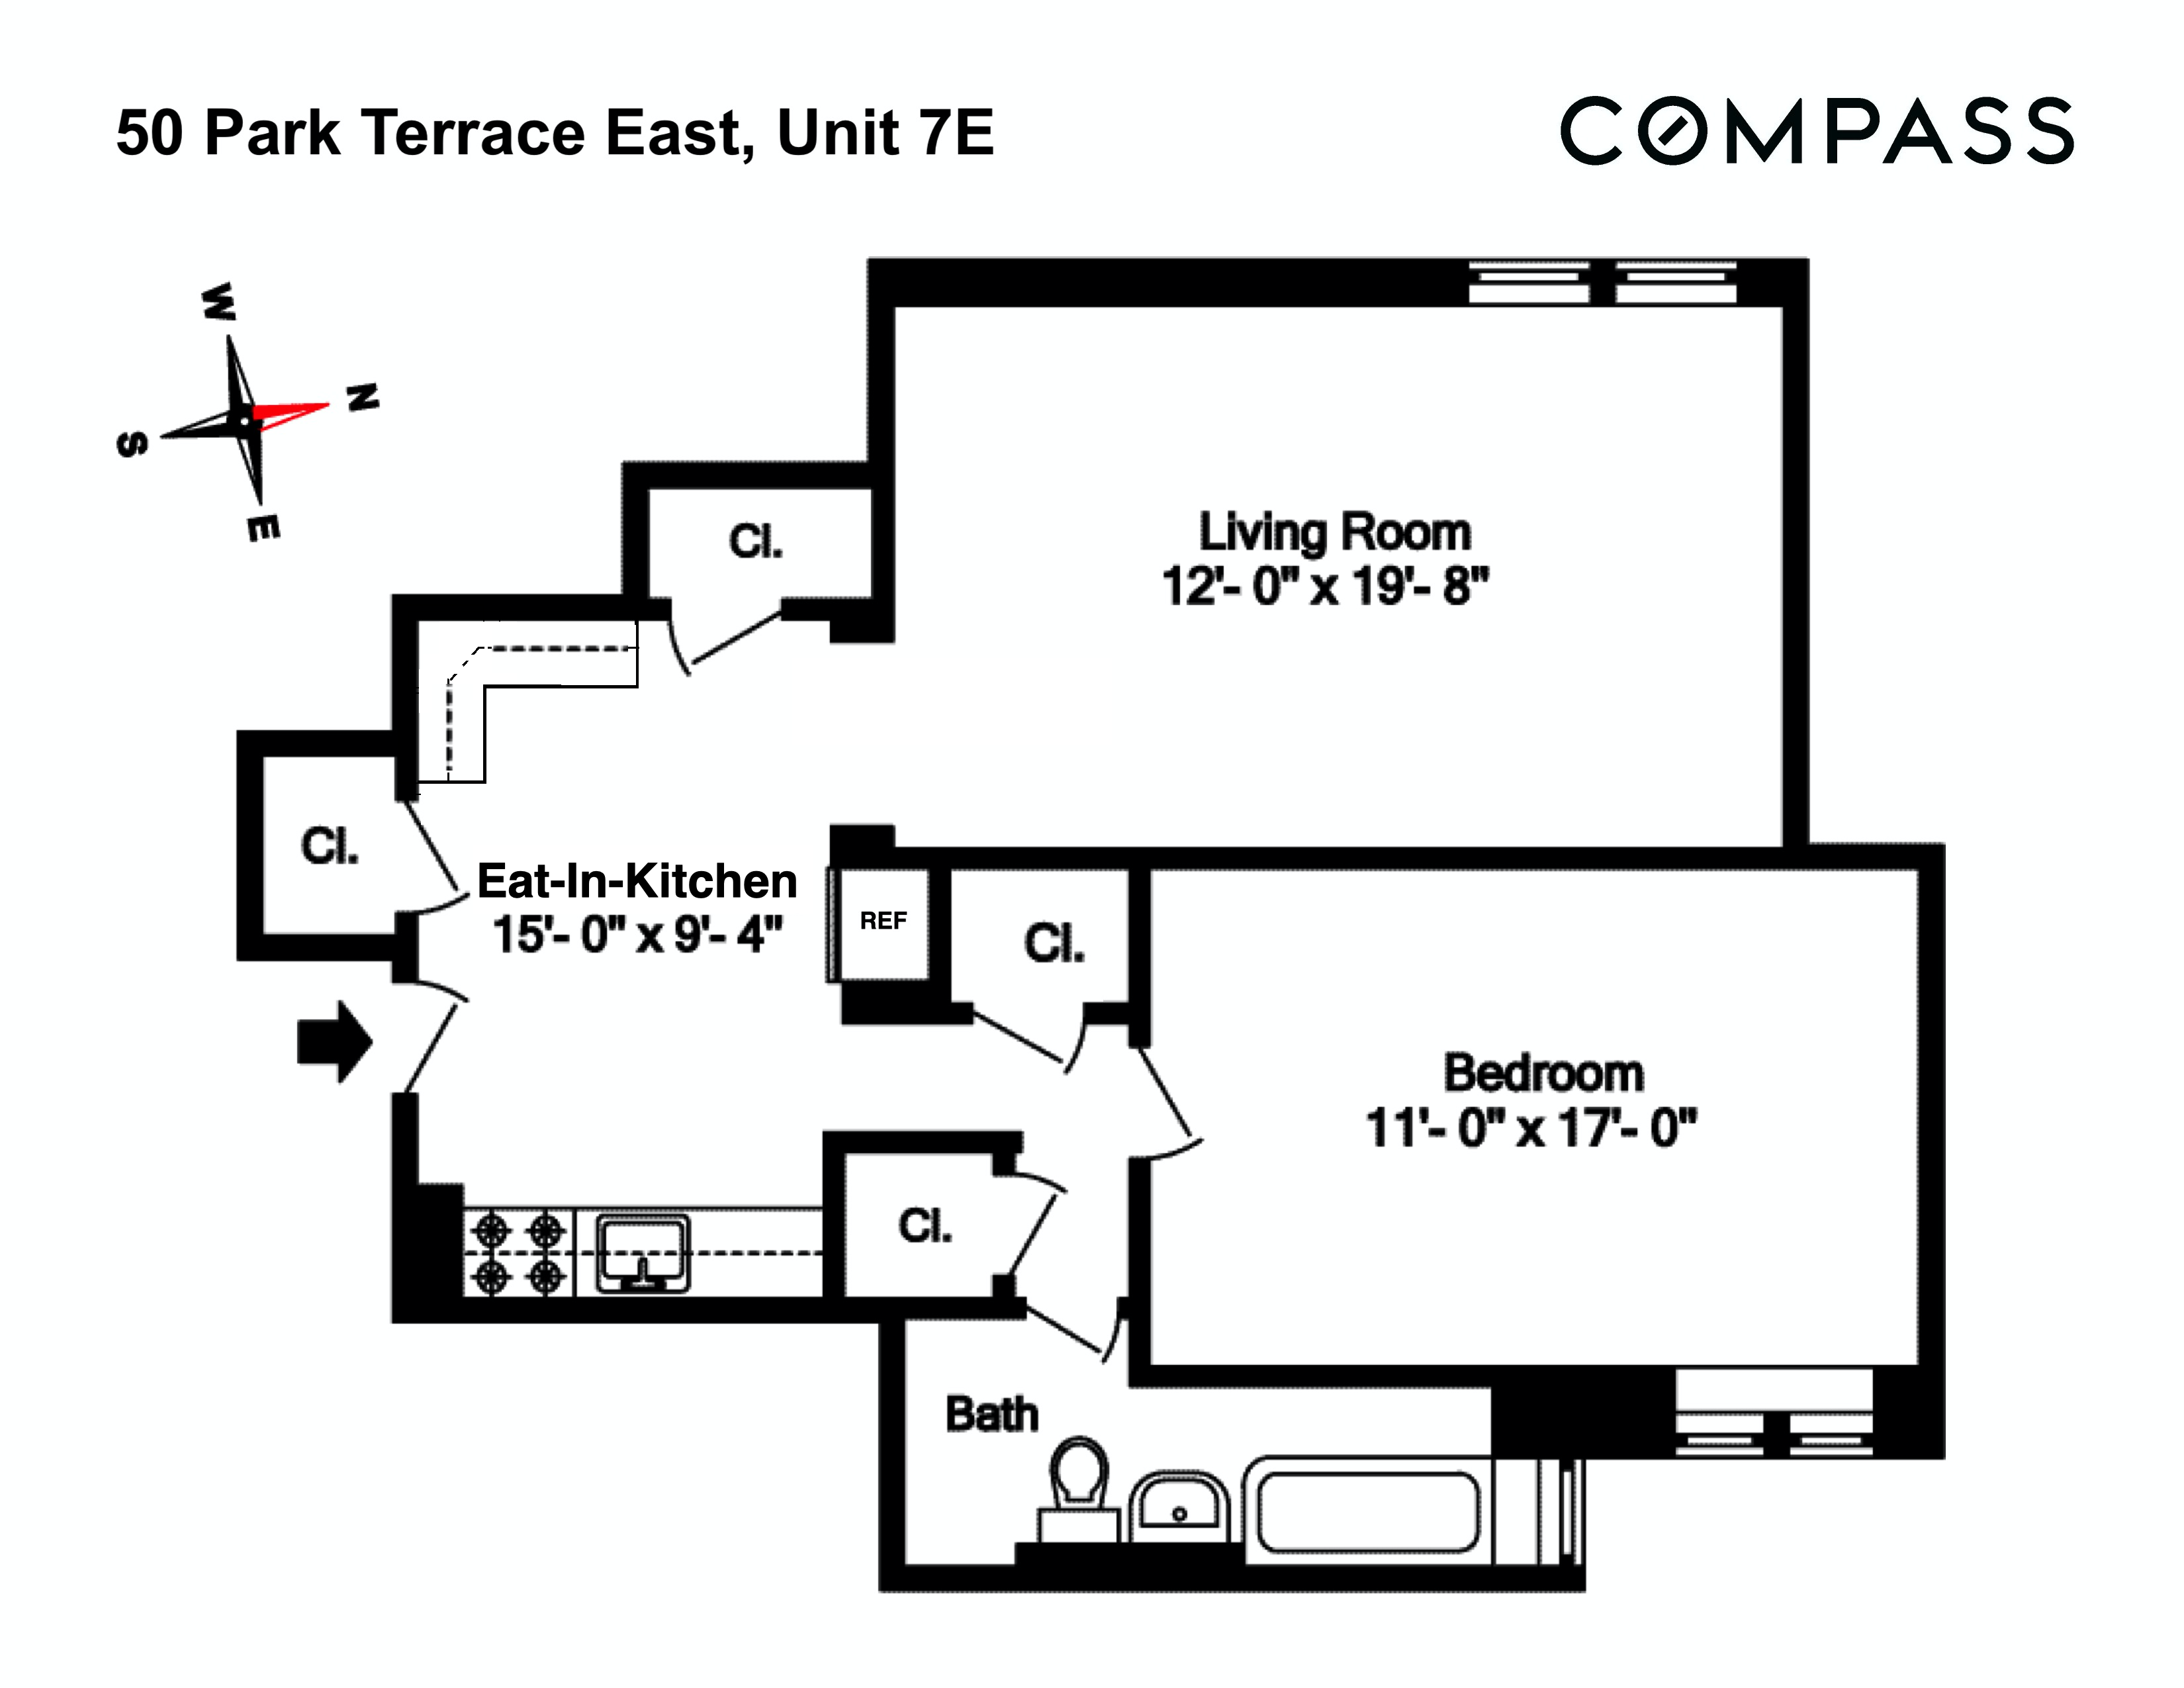 Floorplan for 50 Park Terrace, 7E